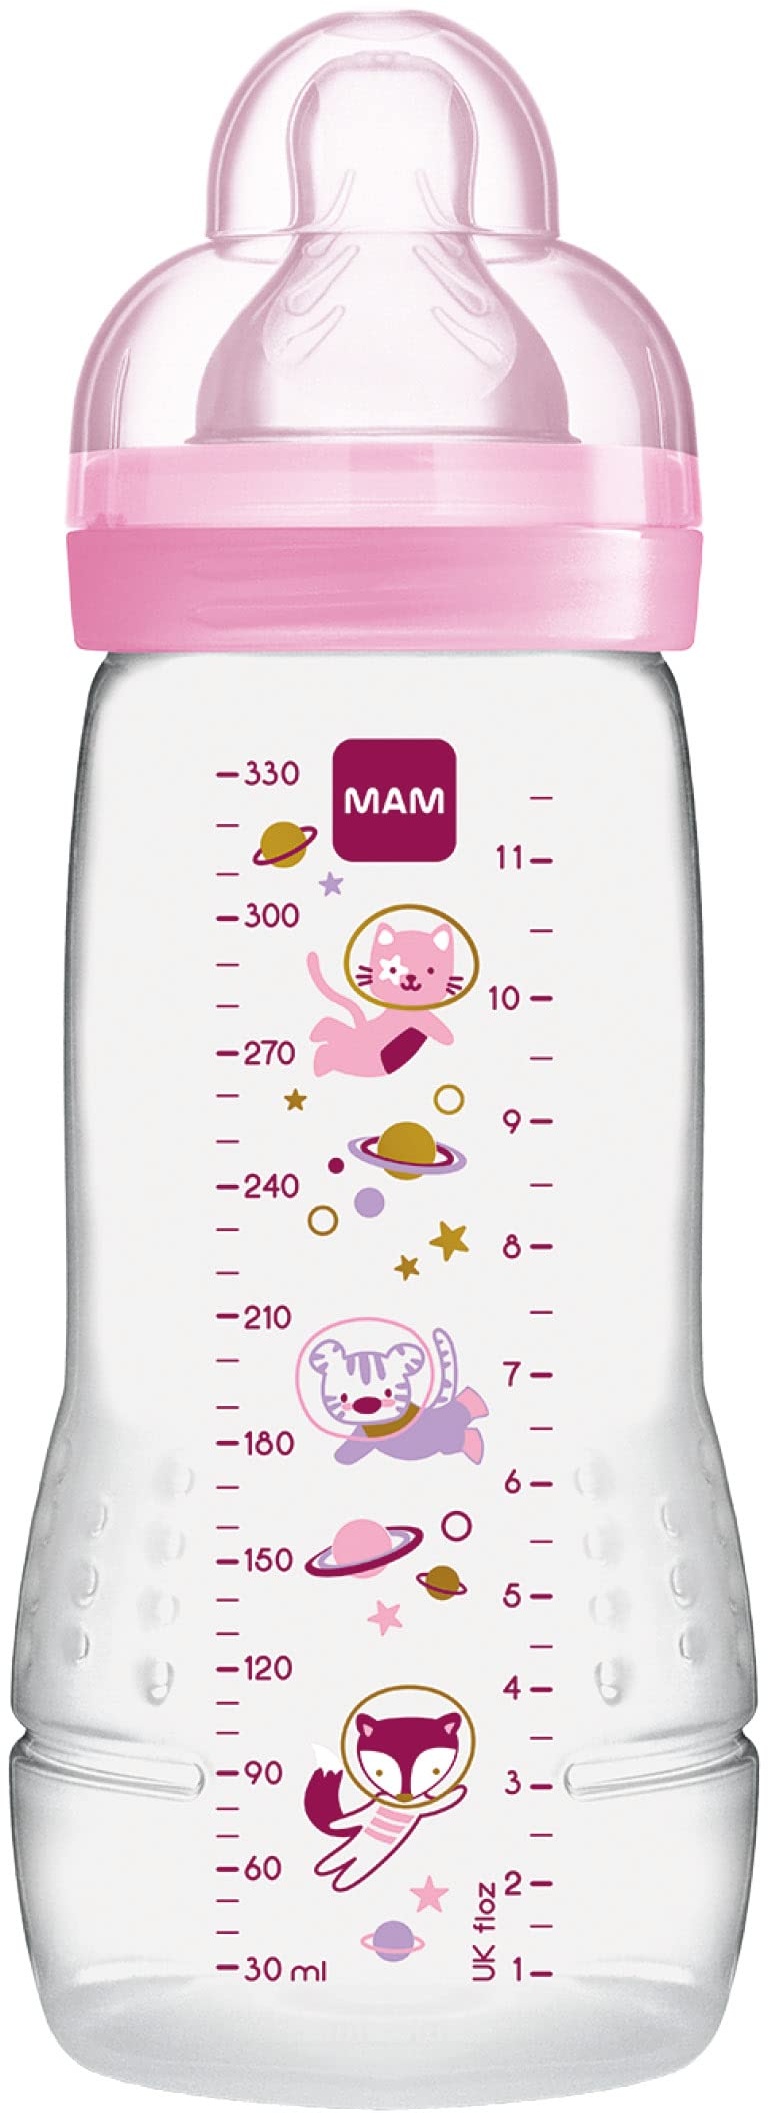 Babyfläschchen Prenatal 5er SET F183 Flasche 330 ml inkl Sauger €2,00/Stück 